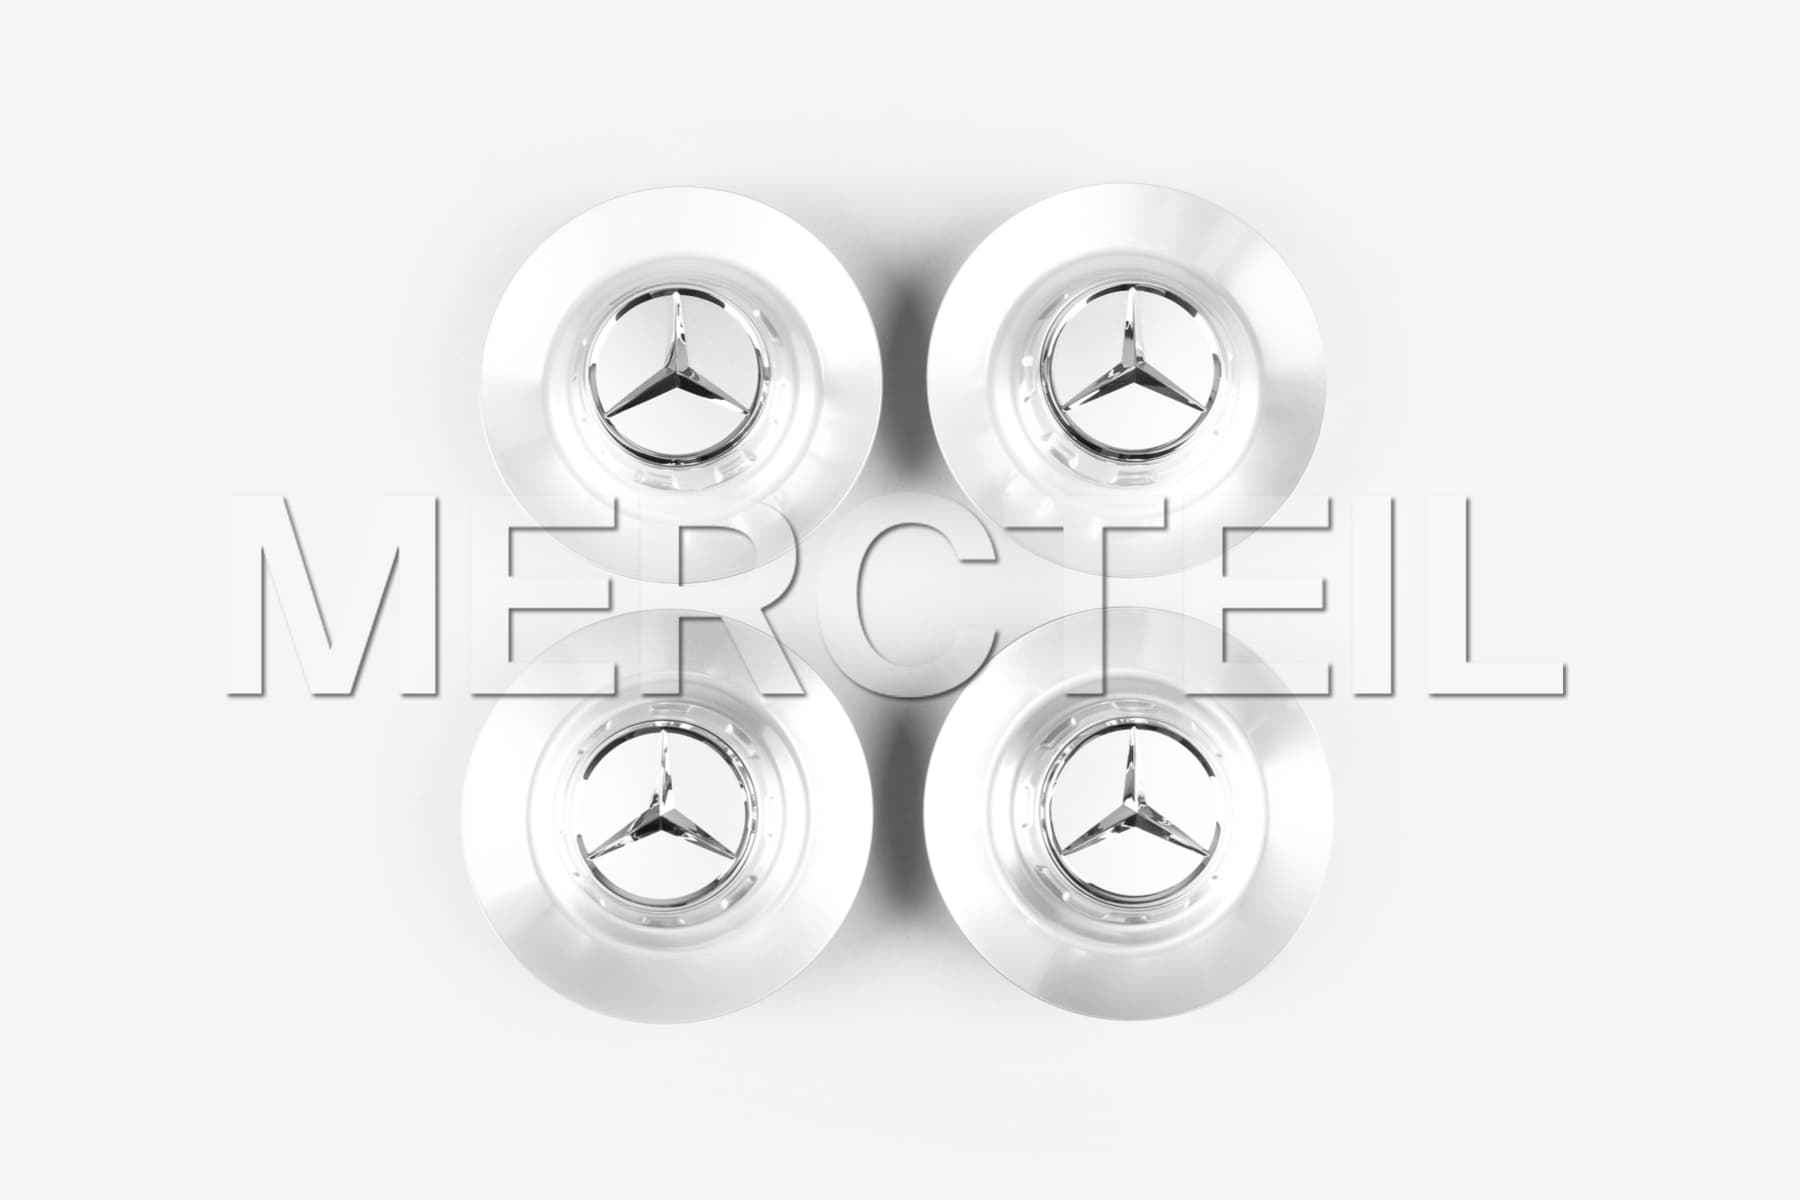 AMG Nabendeckel Satz für S-Klasse Schmiederad Original Mercedes-AMG (Teilenummer: A22240028007756)